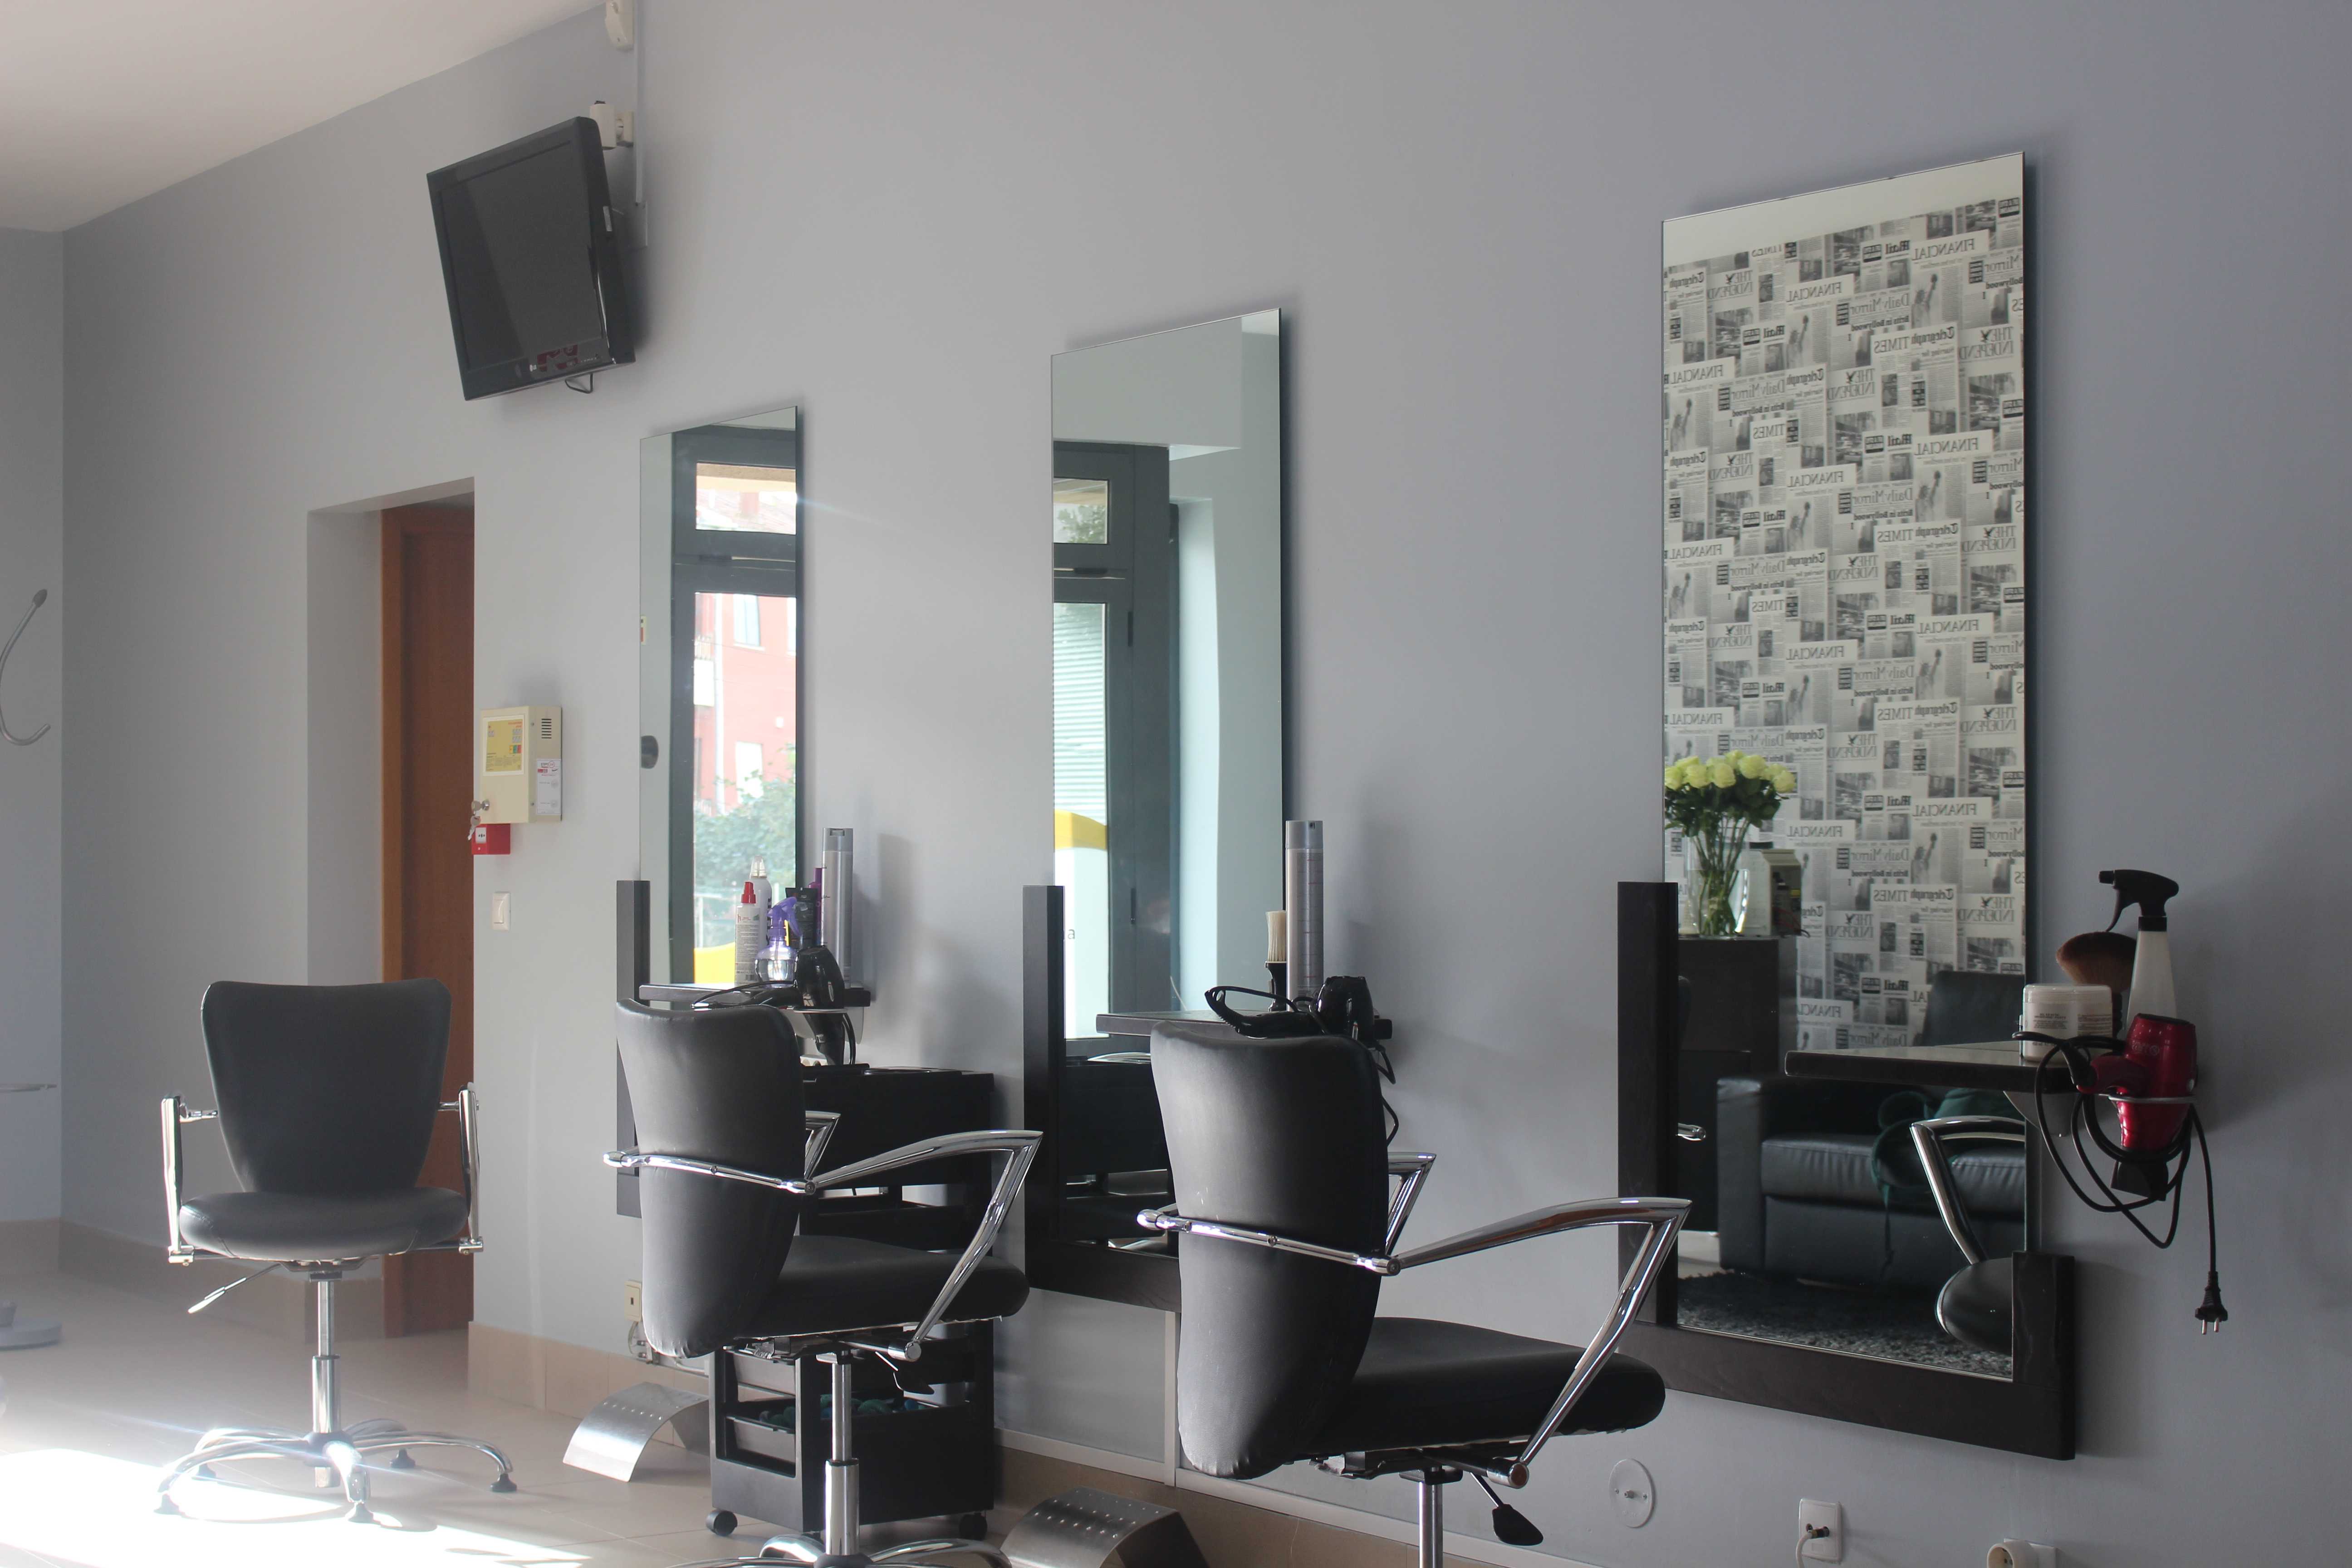 hair salon 3 mirrors